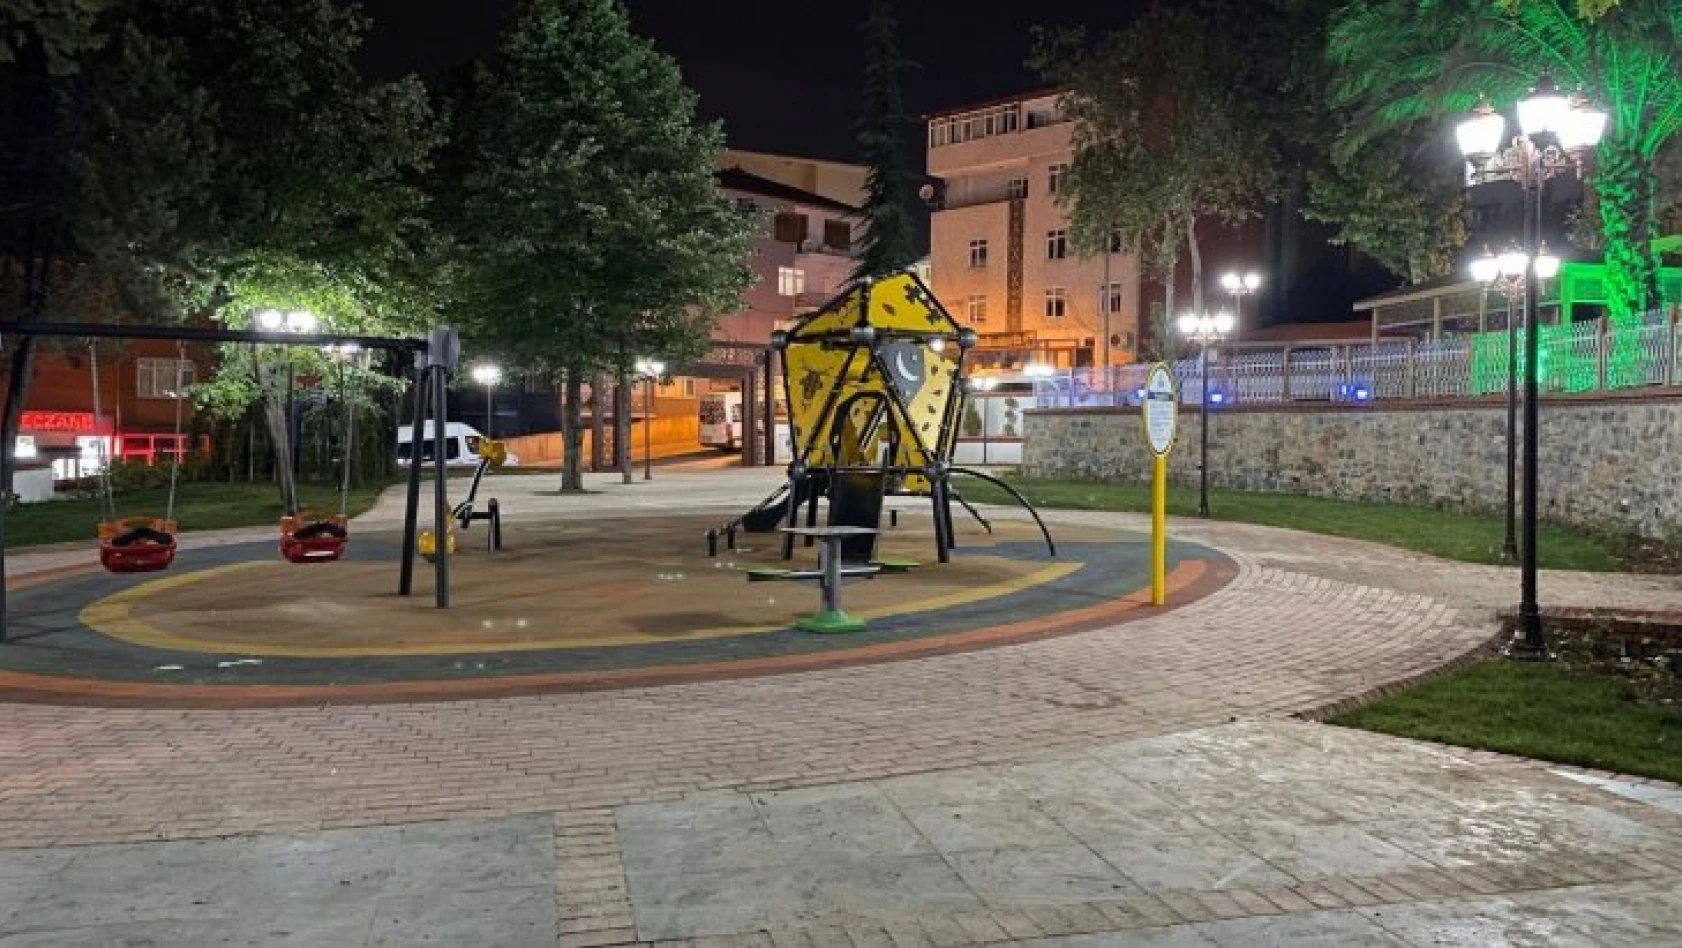 Adnan Kahveci Parkı akşam buluşmaları için aydınlatıldı